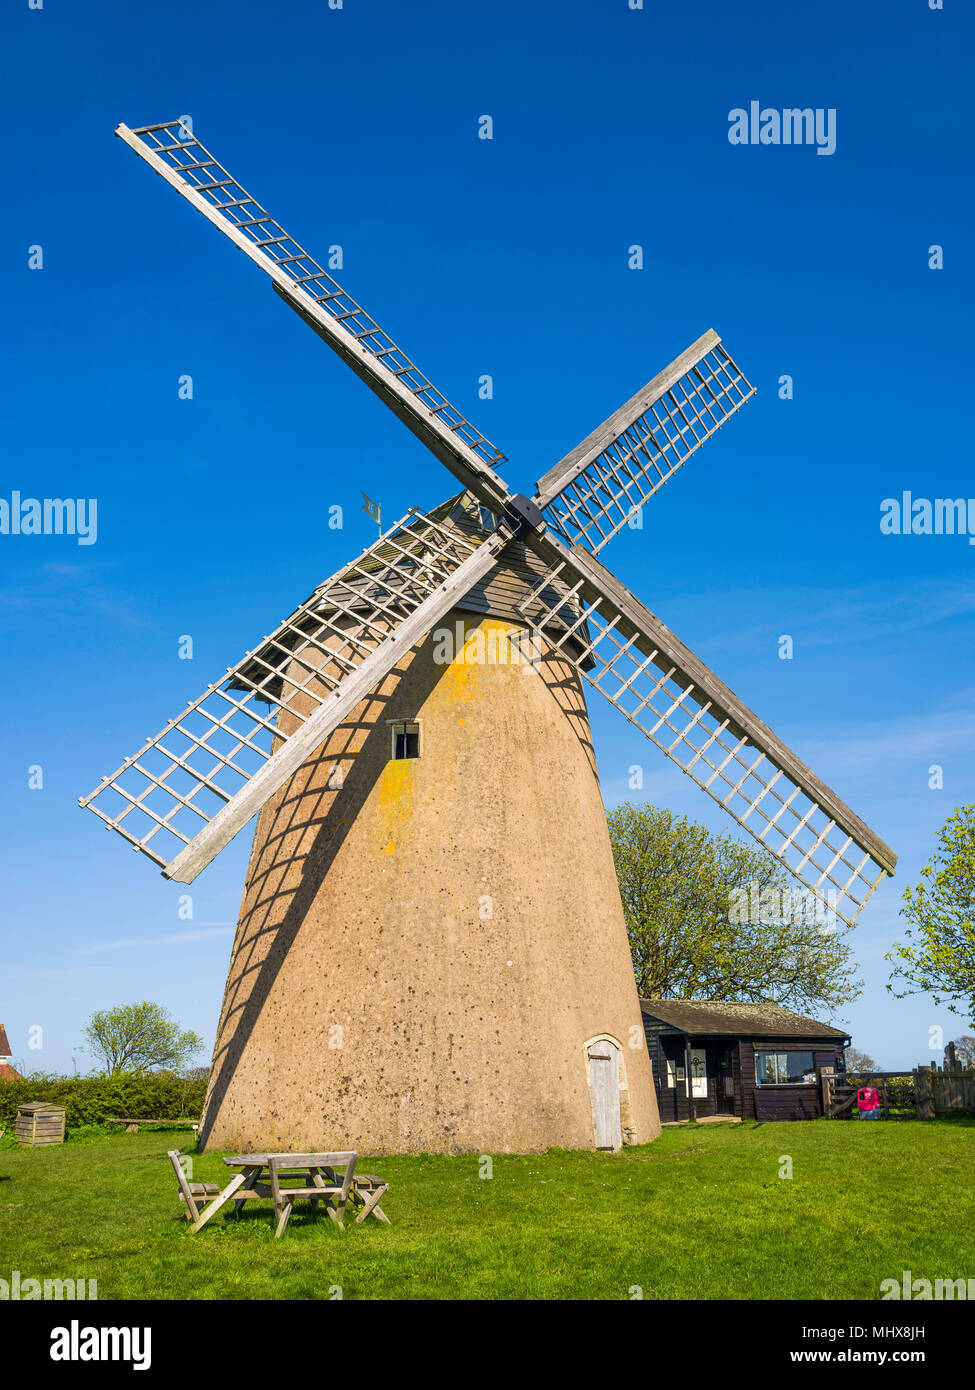 Knowle mulino, oggi noto come Bembridge Windmill è un grado che ho elencato il mulino a vento di torre a Bembridge, Isle of Wight, Hampshire, Inghilterra. Foto Stock